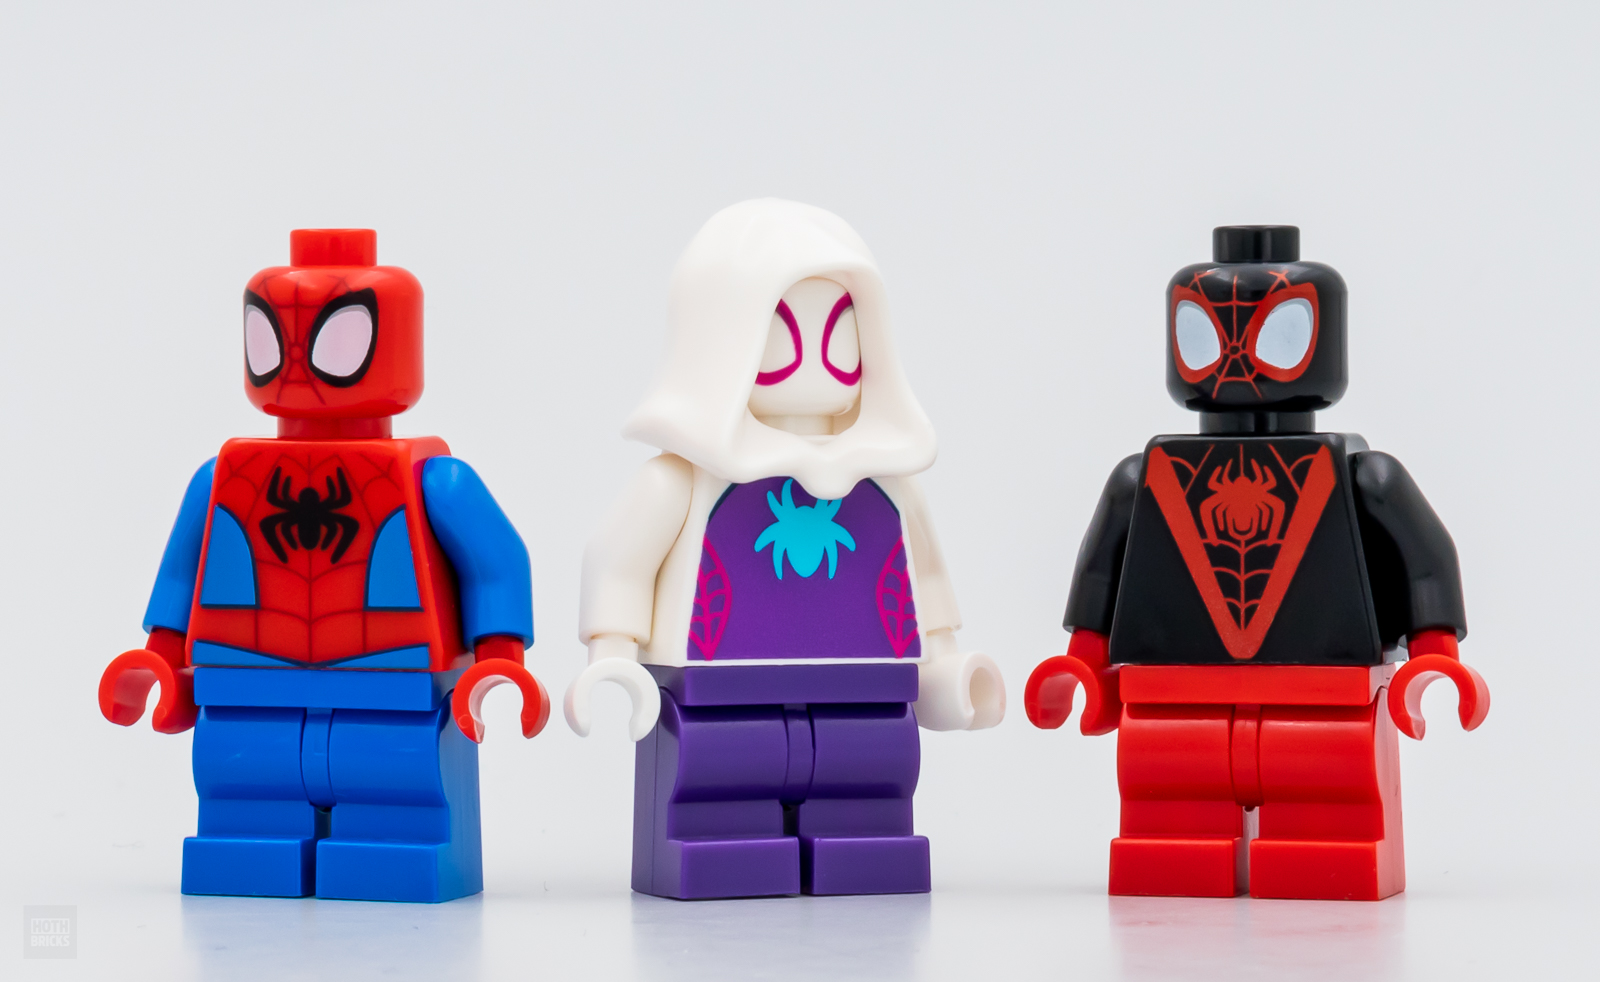 LEGO® Spider-Man 10784 Spider-Man Webquarters Hangout